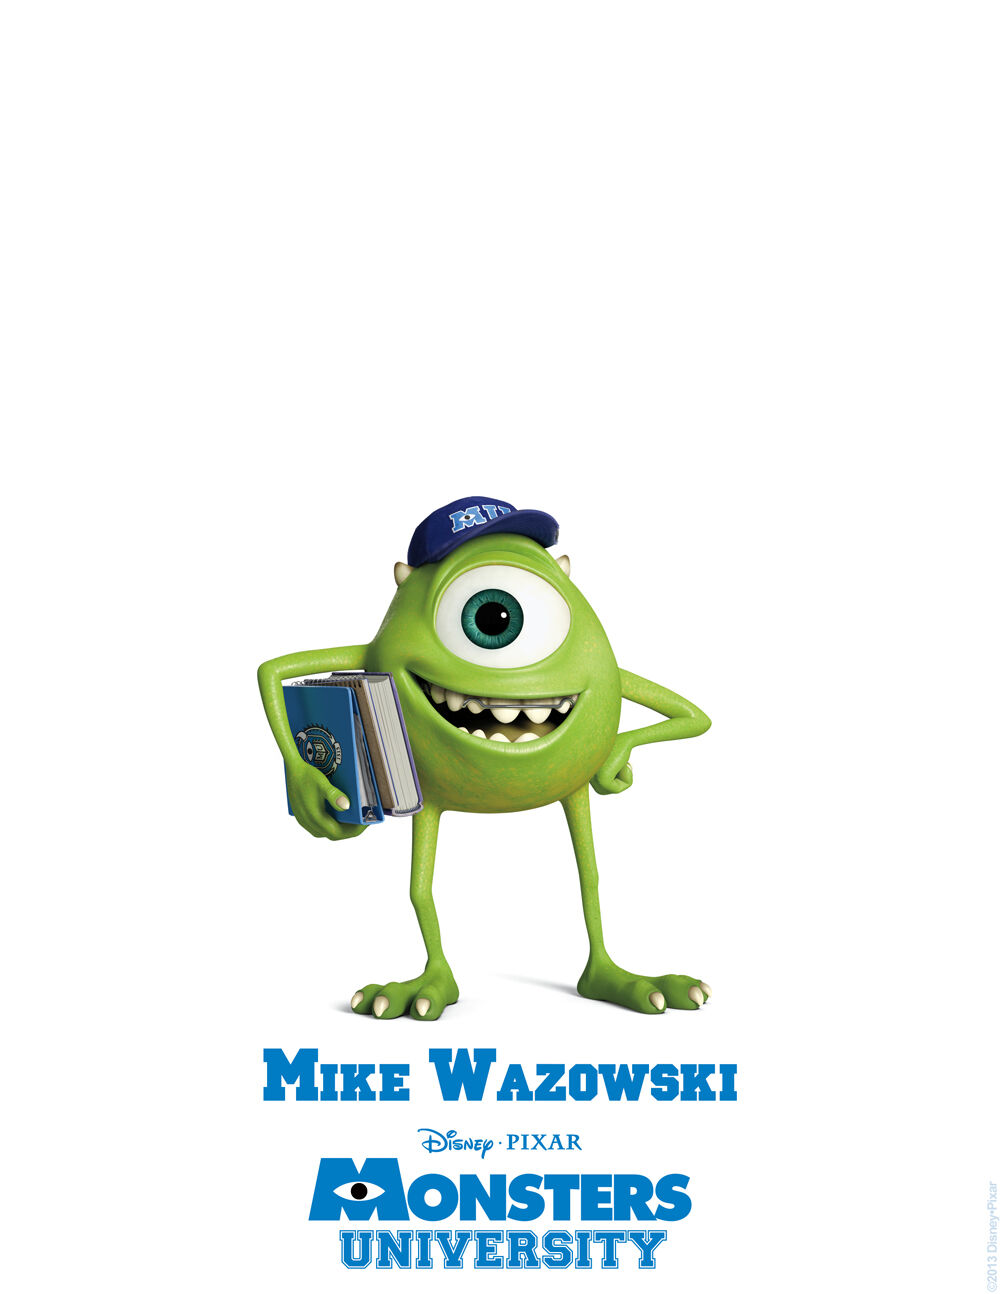 Mike Wazowski, Wiki Pixar